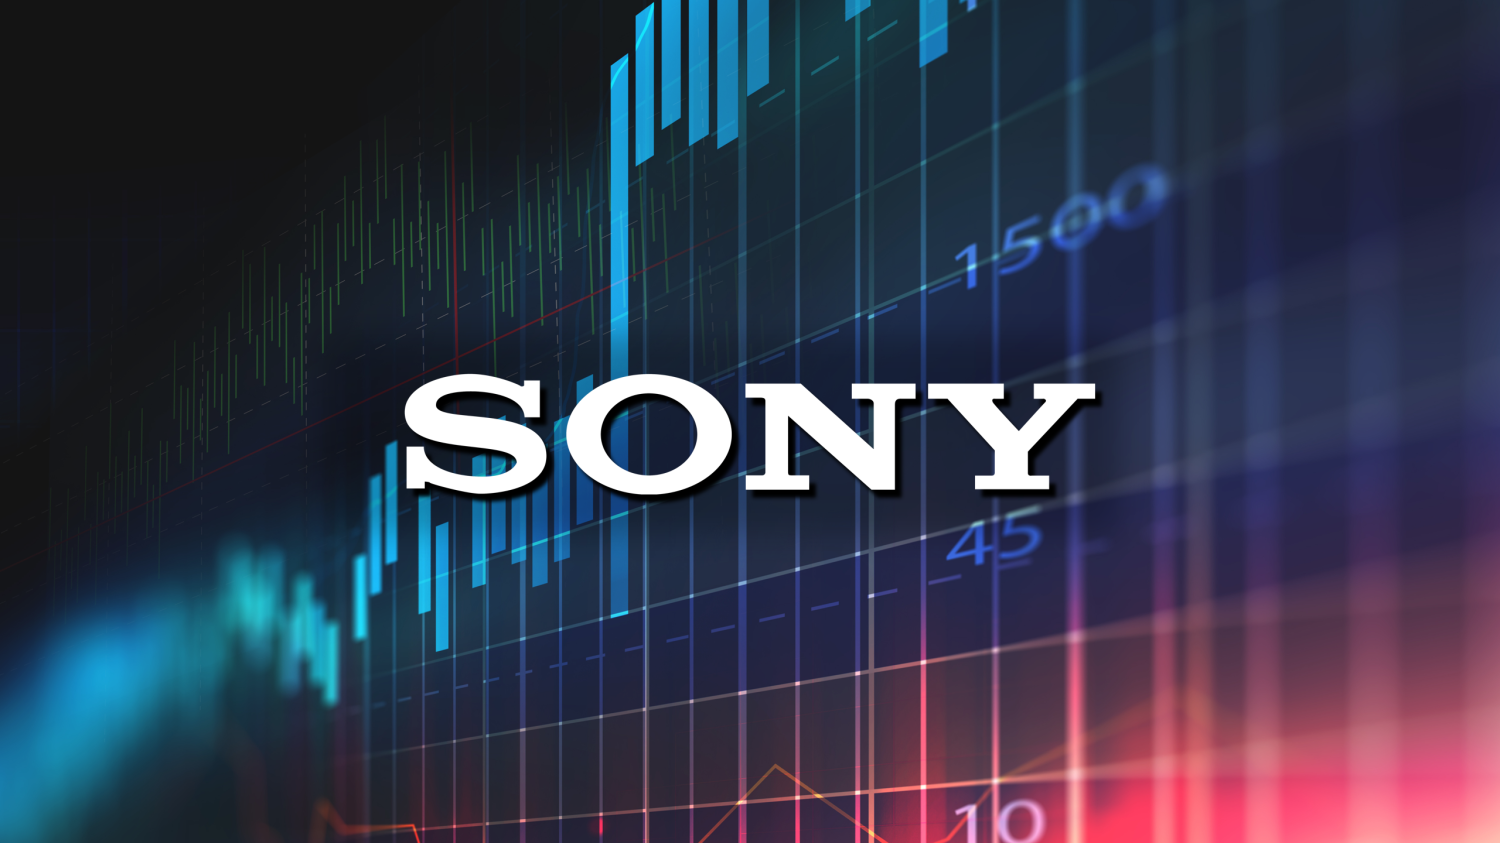 Sony queria cobrar acima de 70 dólares nos jogos, diz Bloomberg